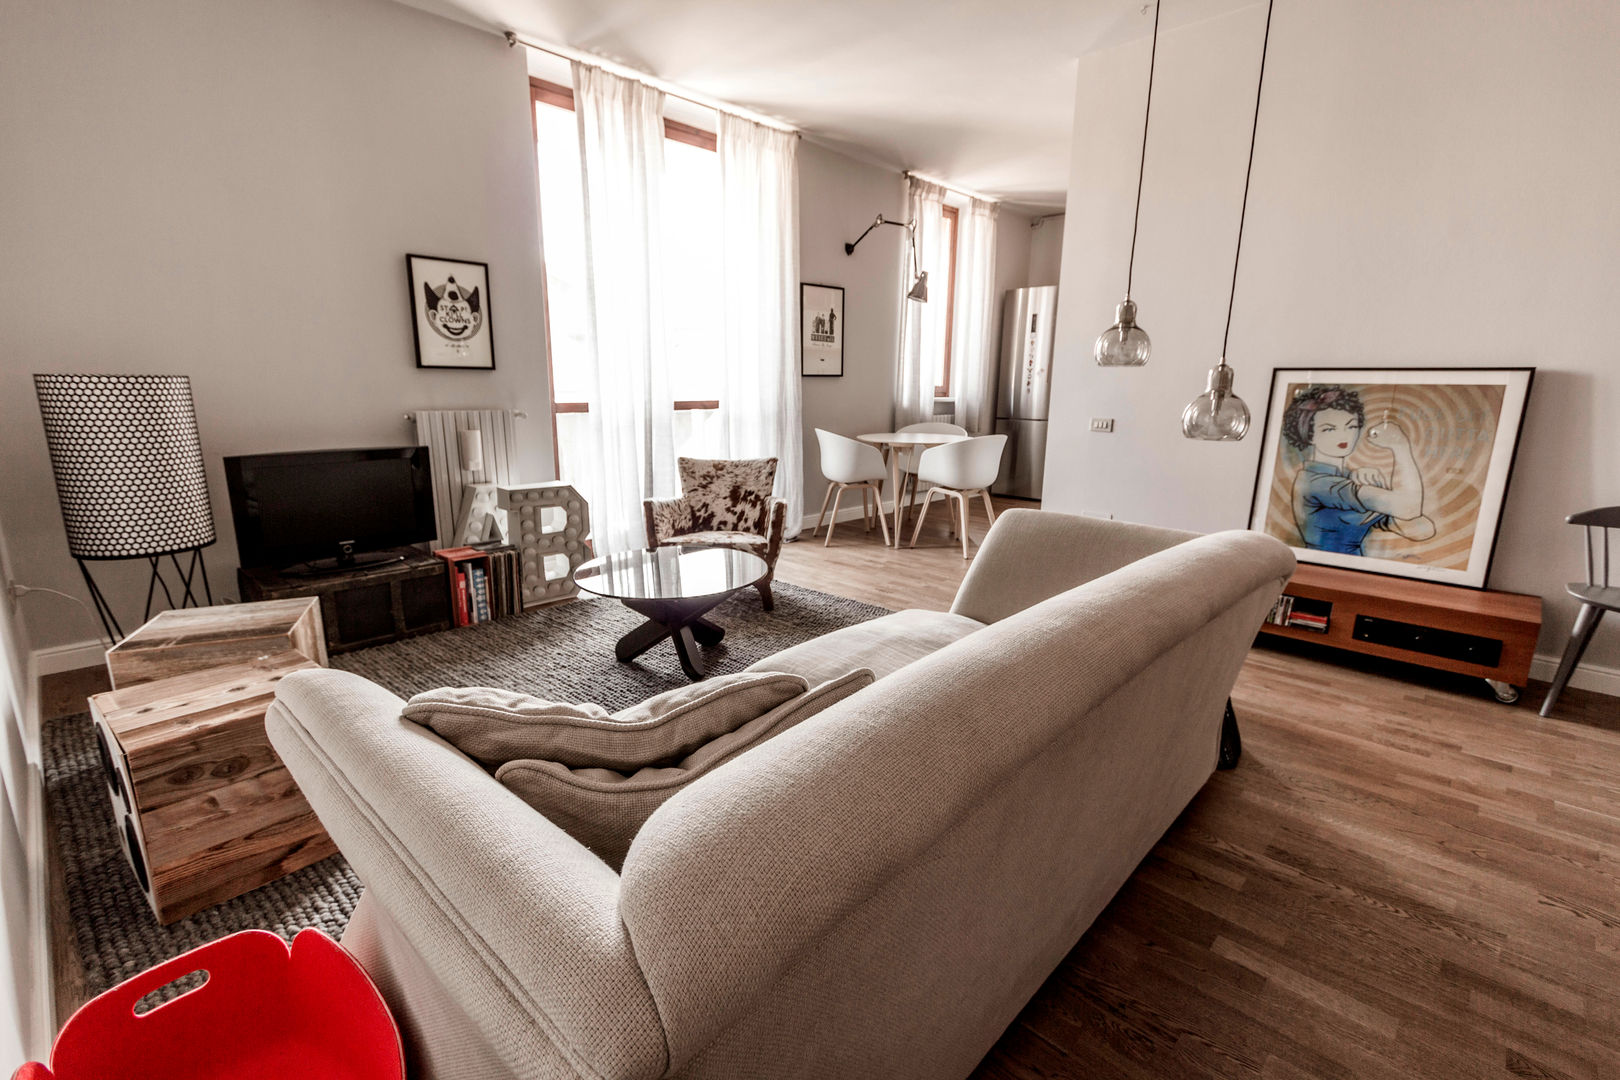 Appartamento Residenziale - Brianza 2014, Galleria del Vento Galleria del Vento Livings de estilo escandinavo